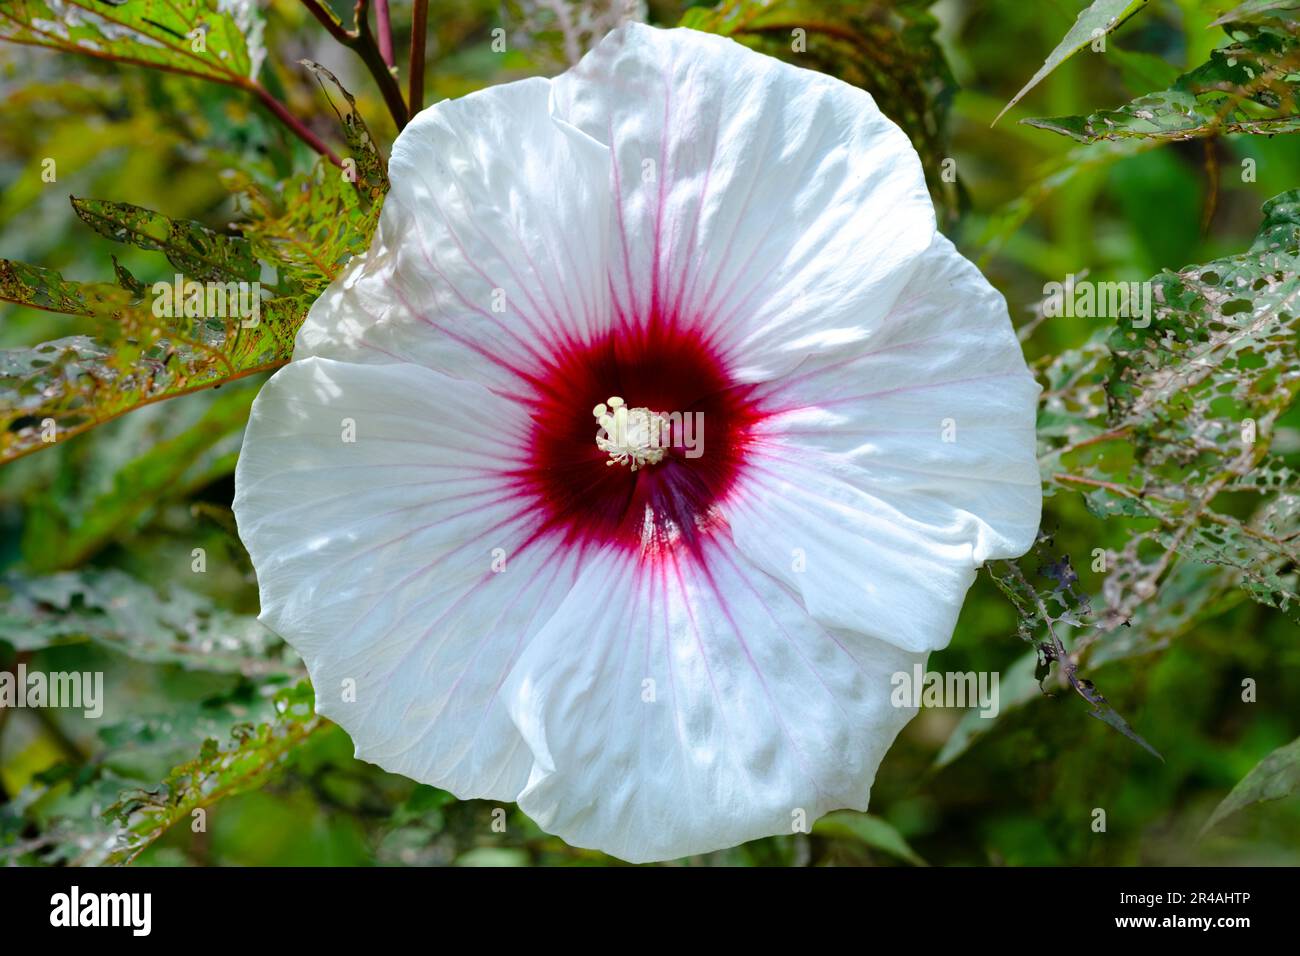 Un fiore vivace con petali bianchi e un centro rosa con polline rosse Foto Stock